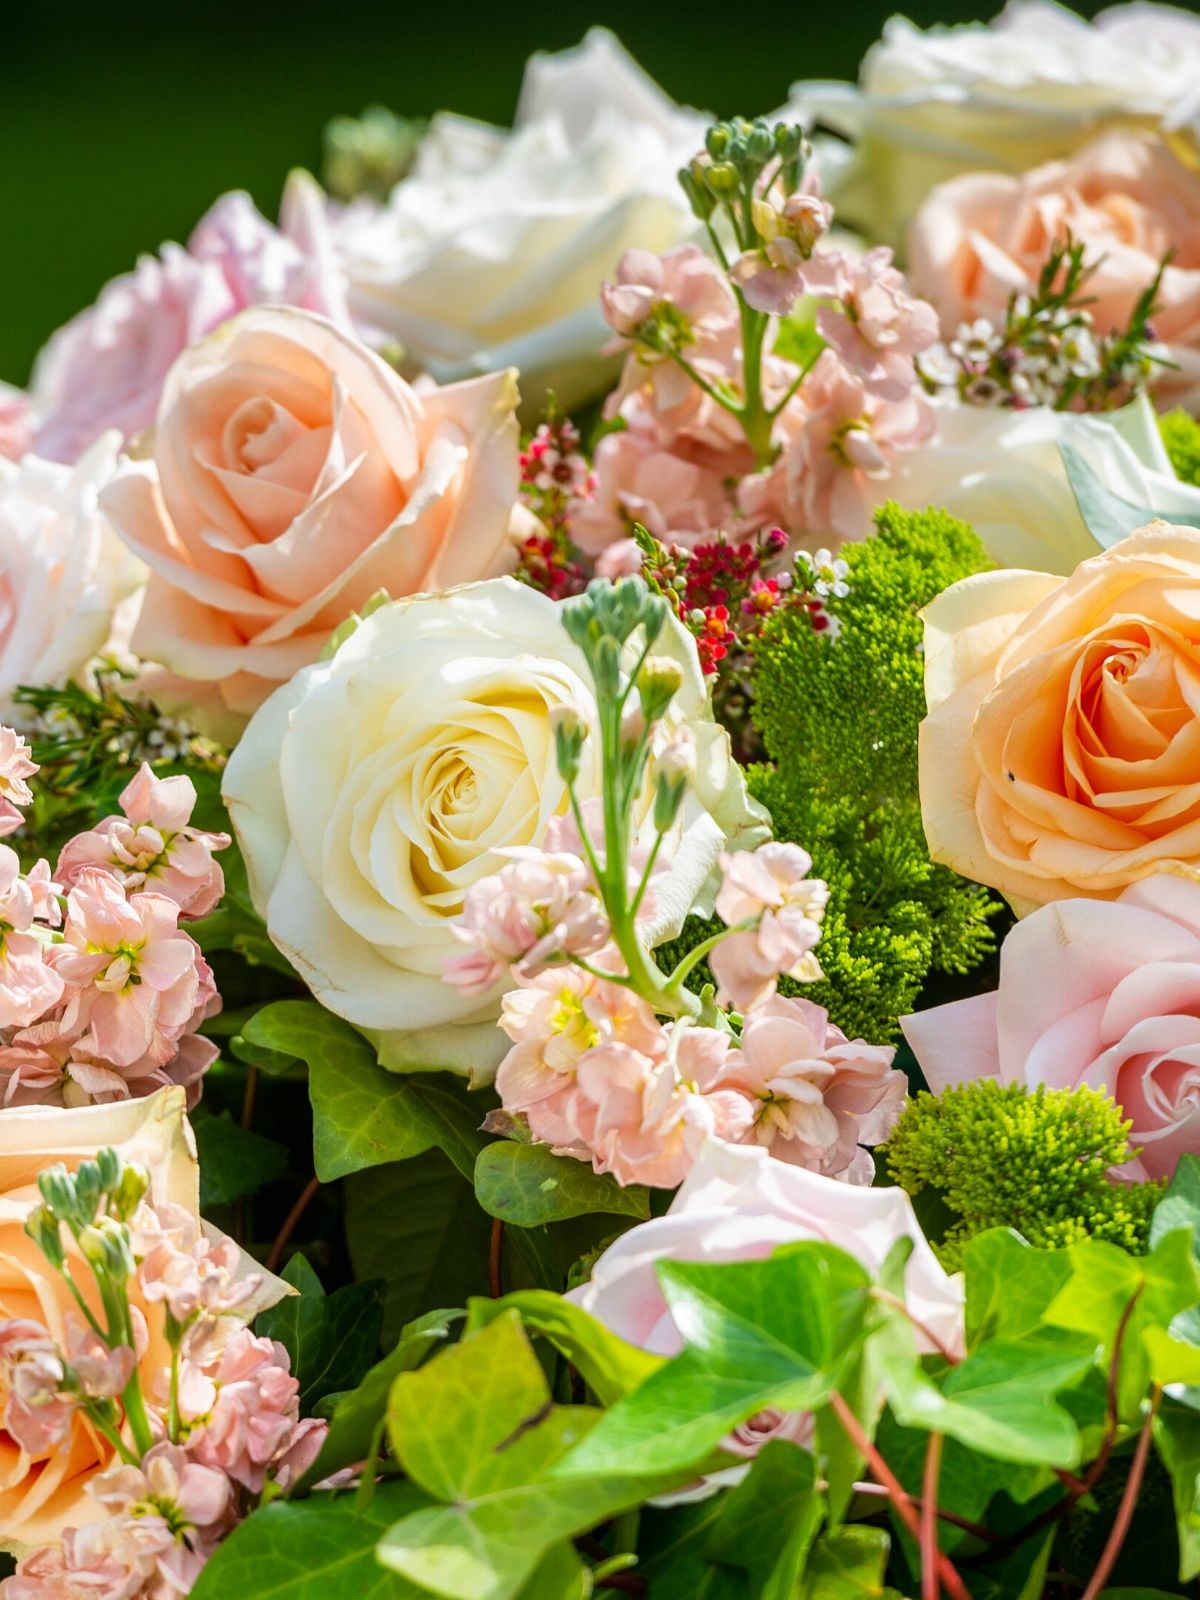 Garden basket full of radiant roses - Avalanche+ Fleur Creatif - on Thursd 02